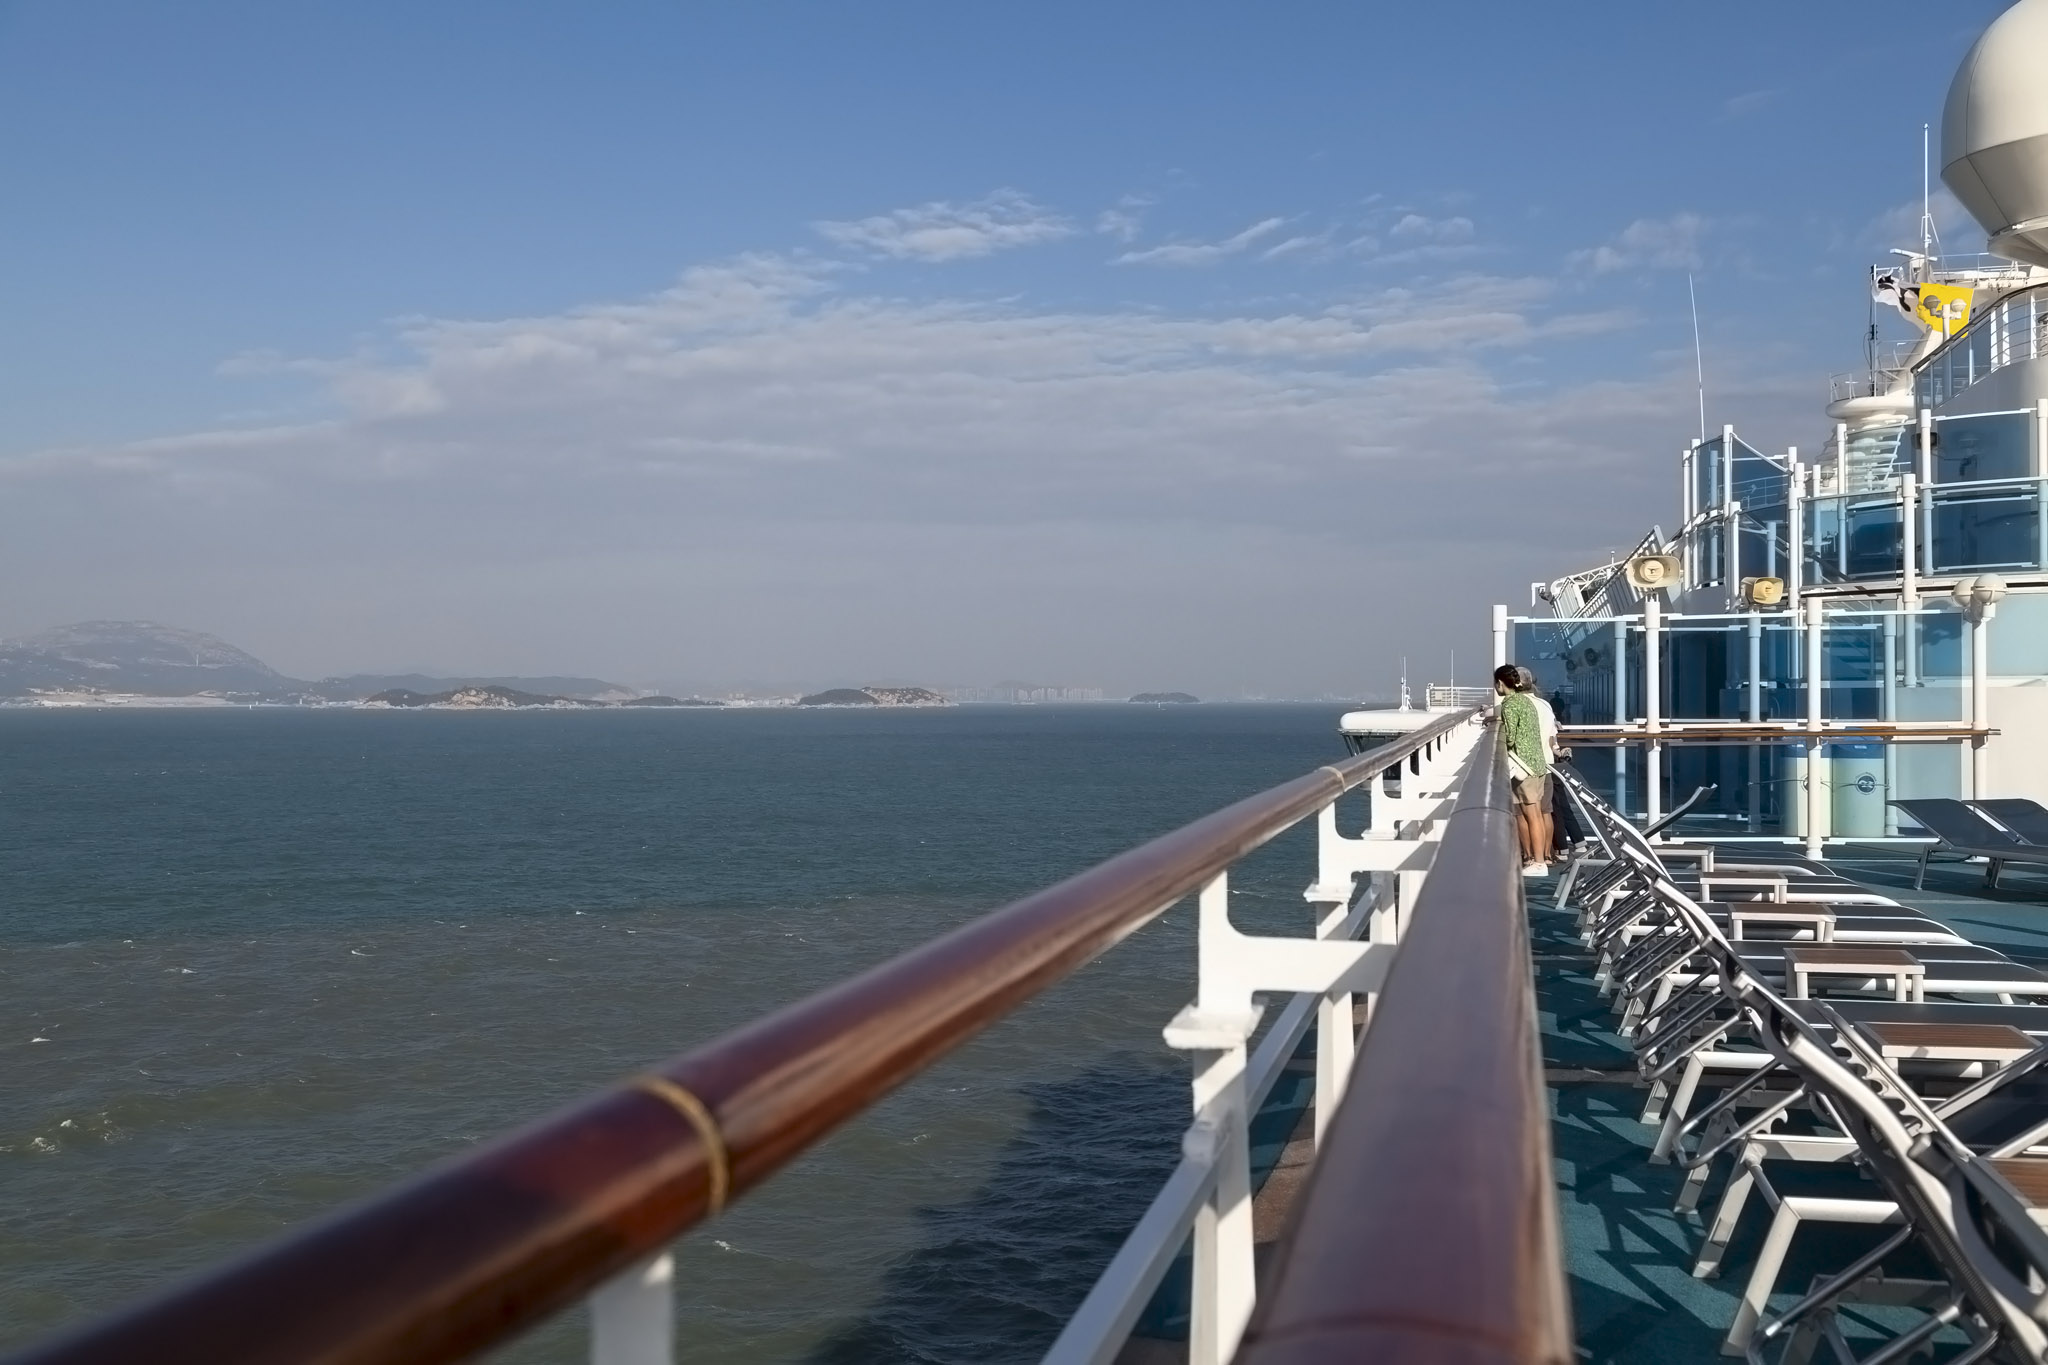 Approaching Xiamen